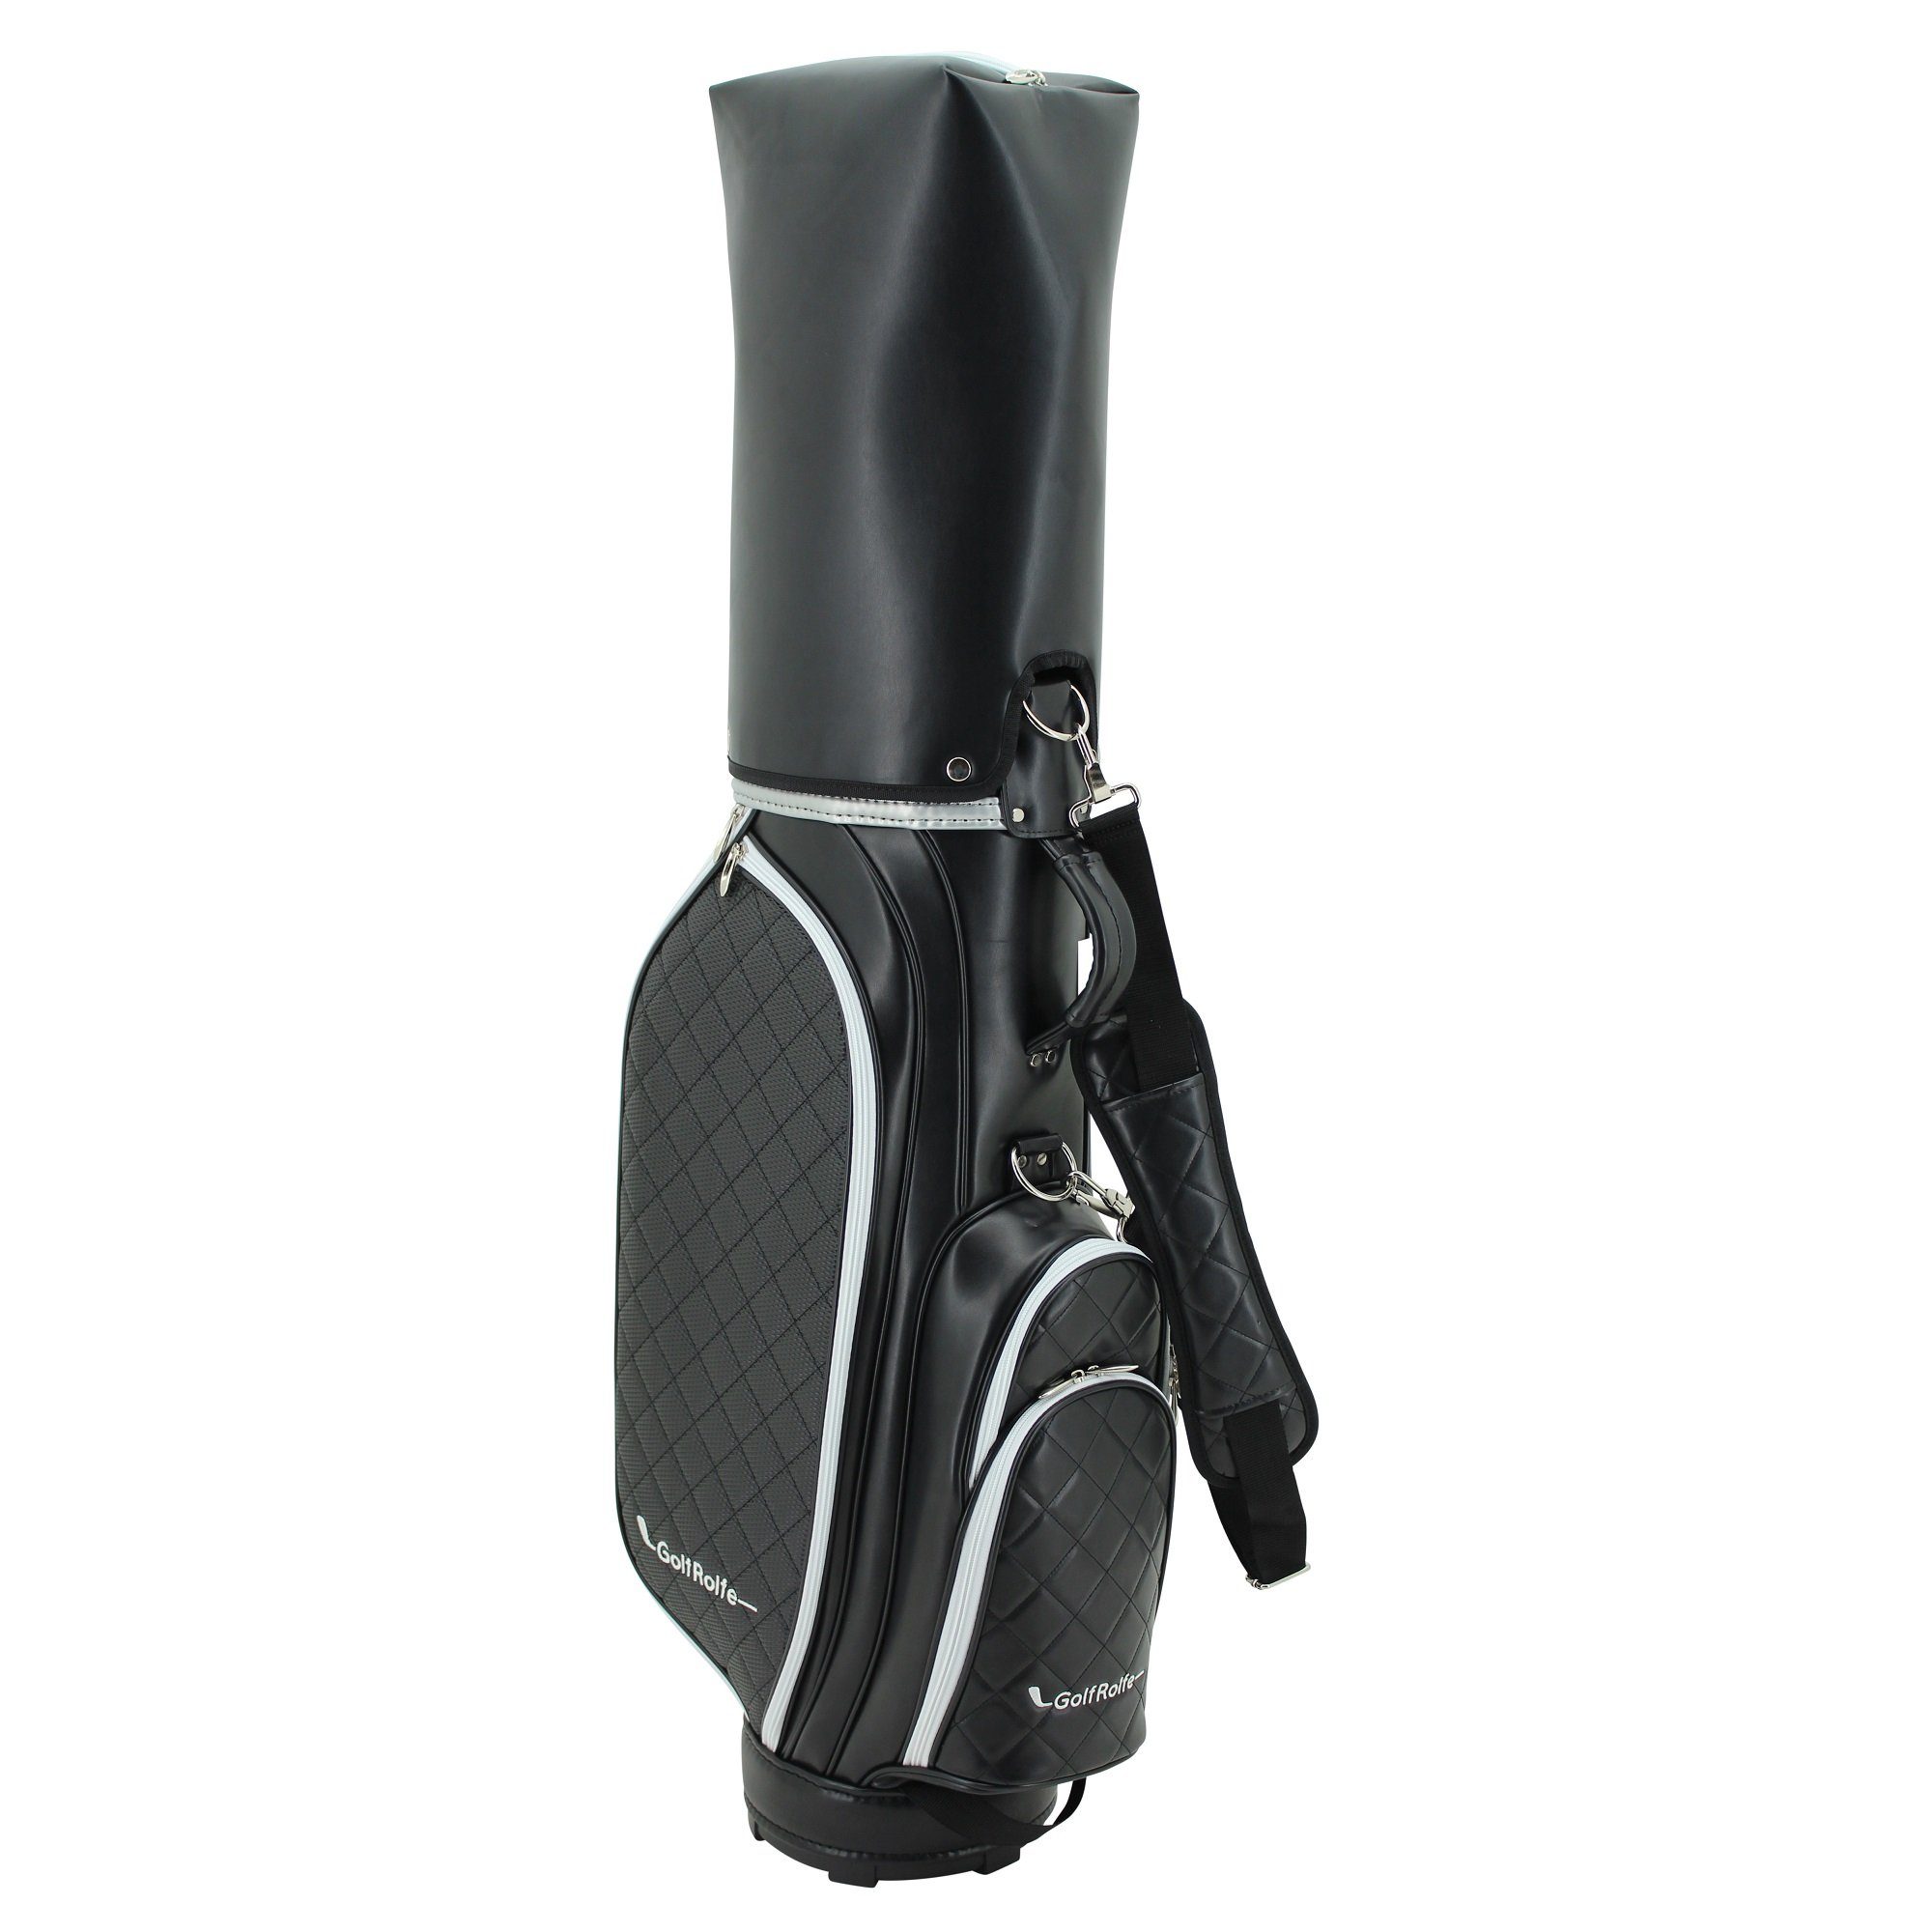 GolfRolfe Golfballtasche - Design 14286 Caddybag Golftasche GolfRolfe schwarz Golfbag